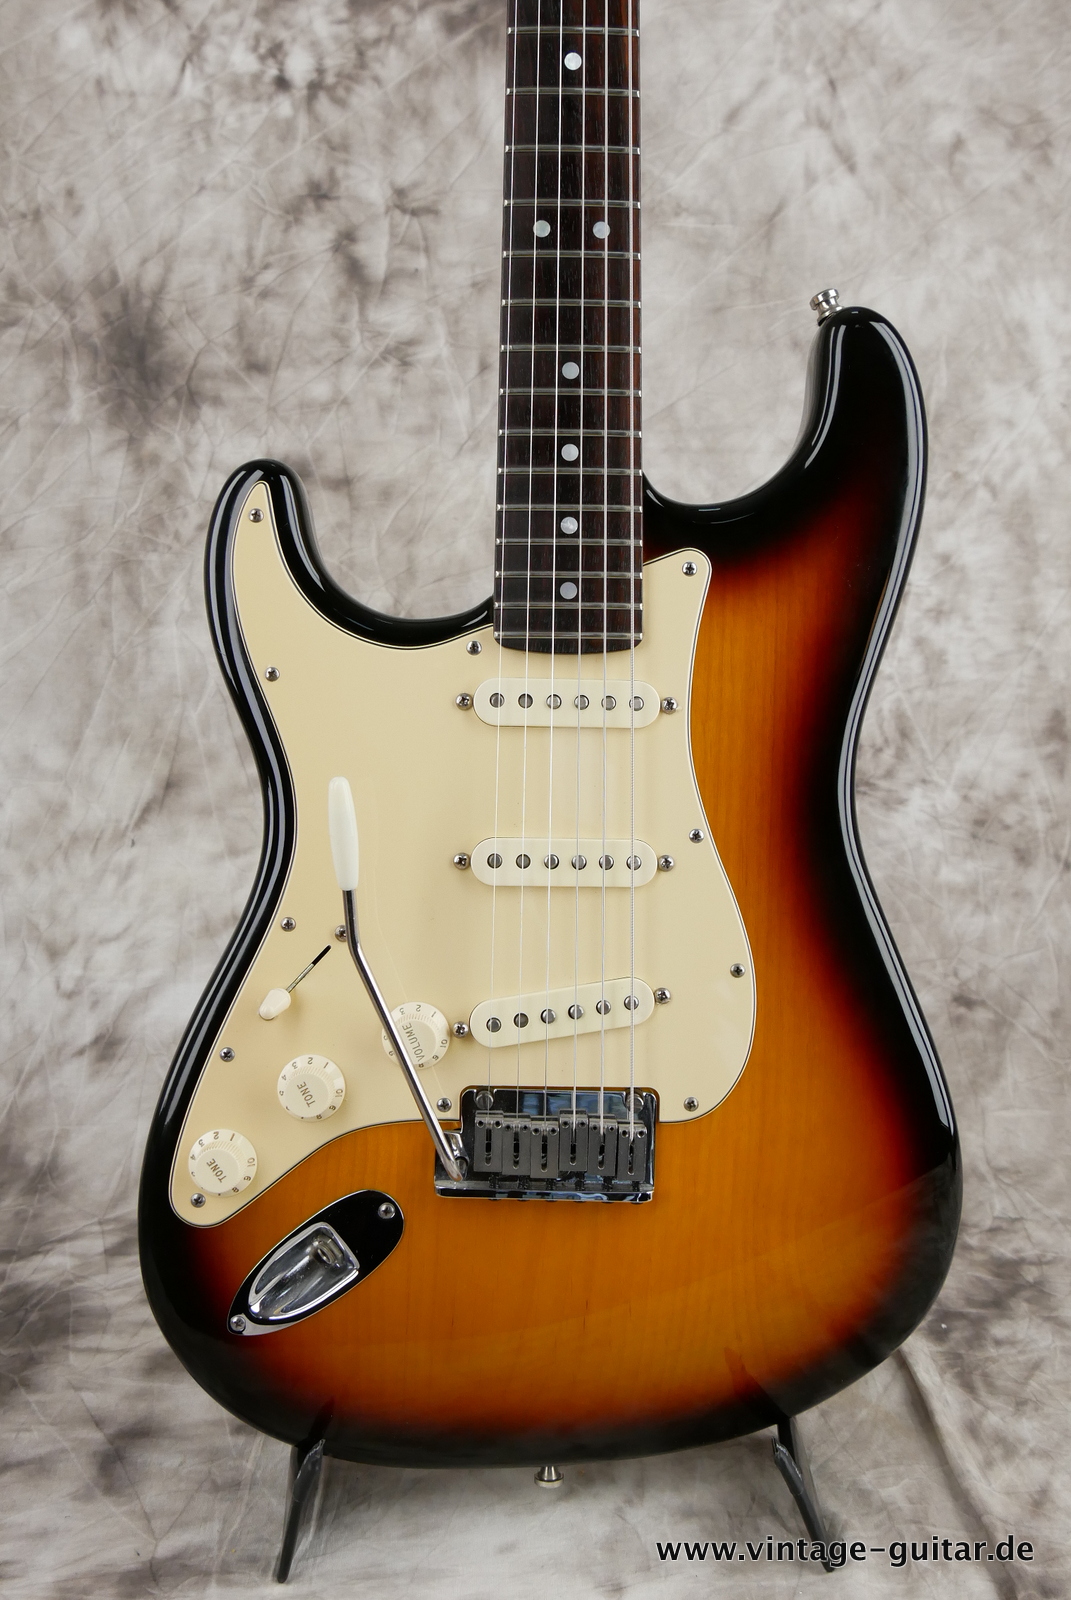 Fender_Stratocaster_American_Series_Diamond_Anniversary_60th_Left_handed_USA_sunburst-007.JPG